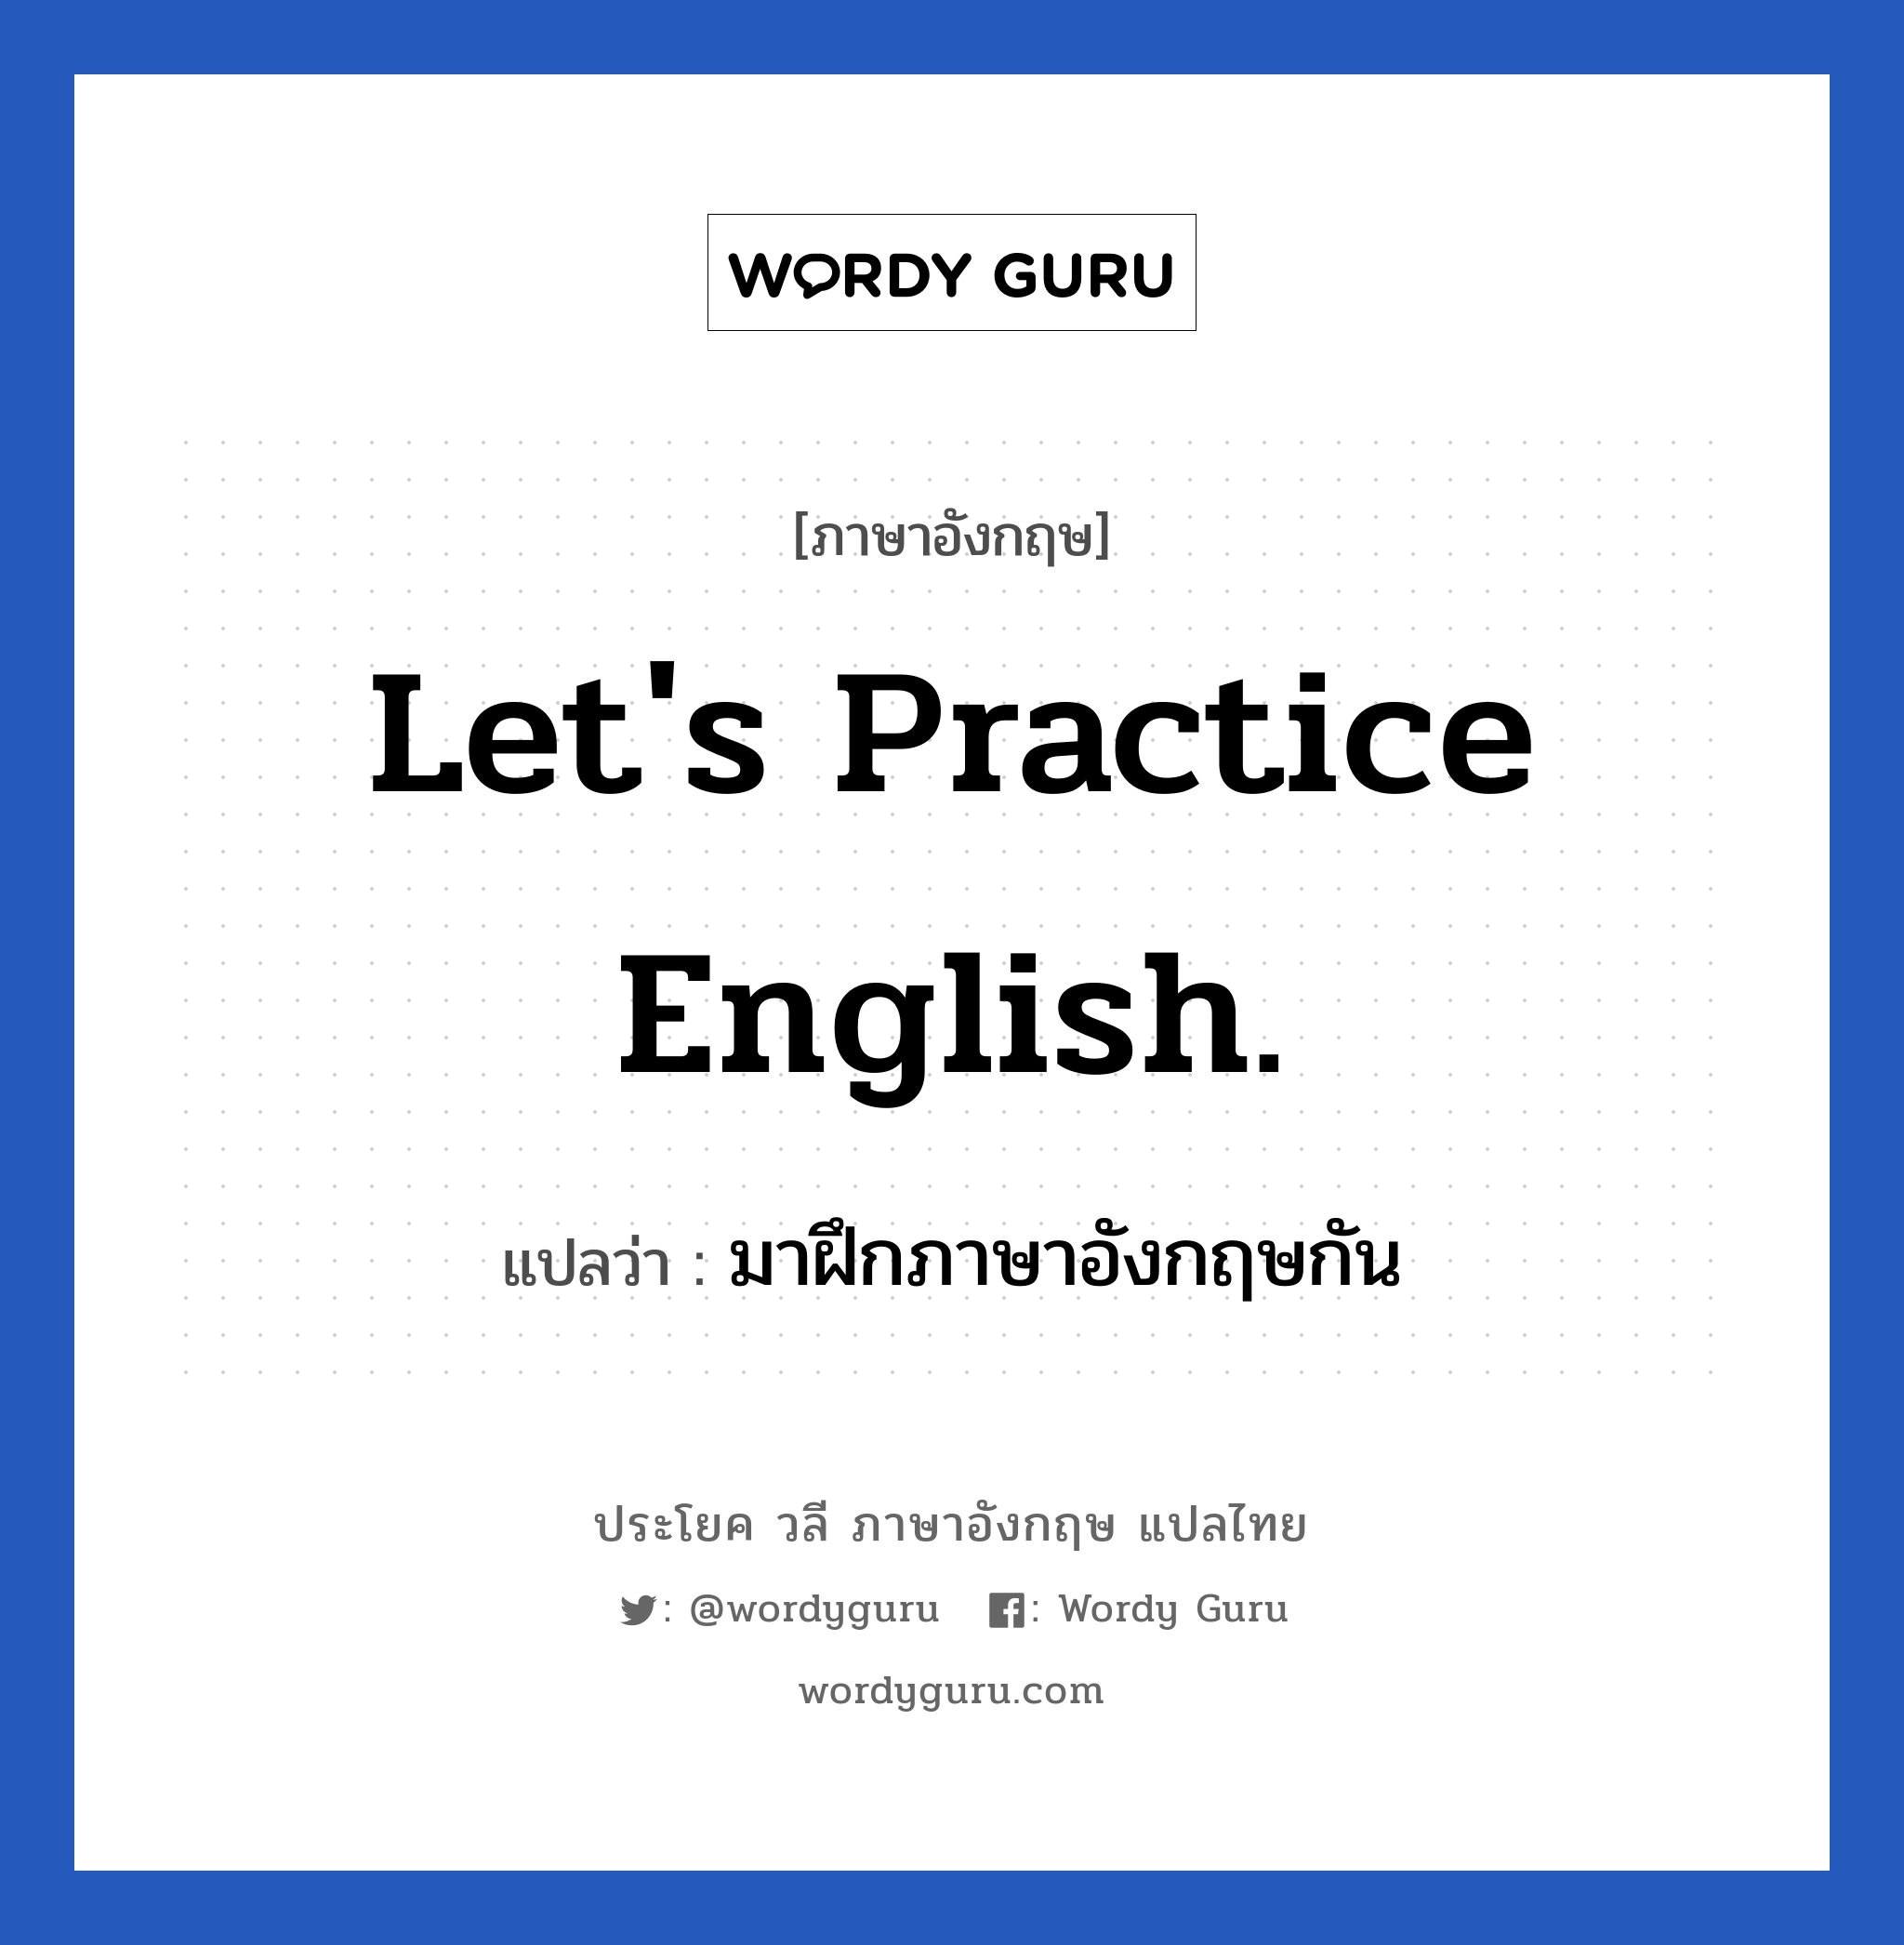 มาฝึกภาษาอังกฤษกัน ภาษาอังกฤษ?, วลีภาษาอังกฤษ มาฝึกภาษาอังกฤษกัน แปลว่า Let's practice English.